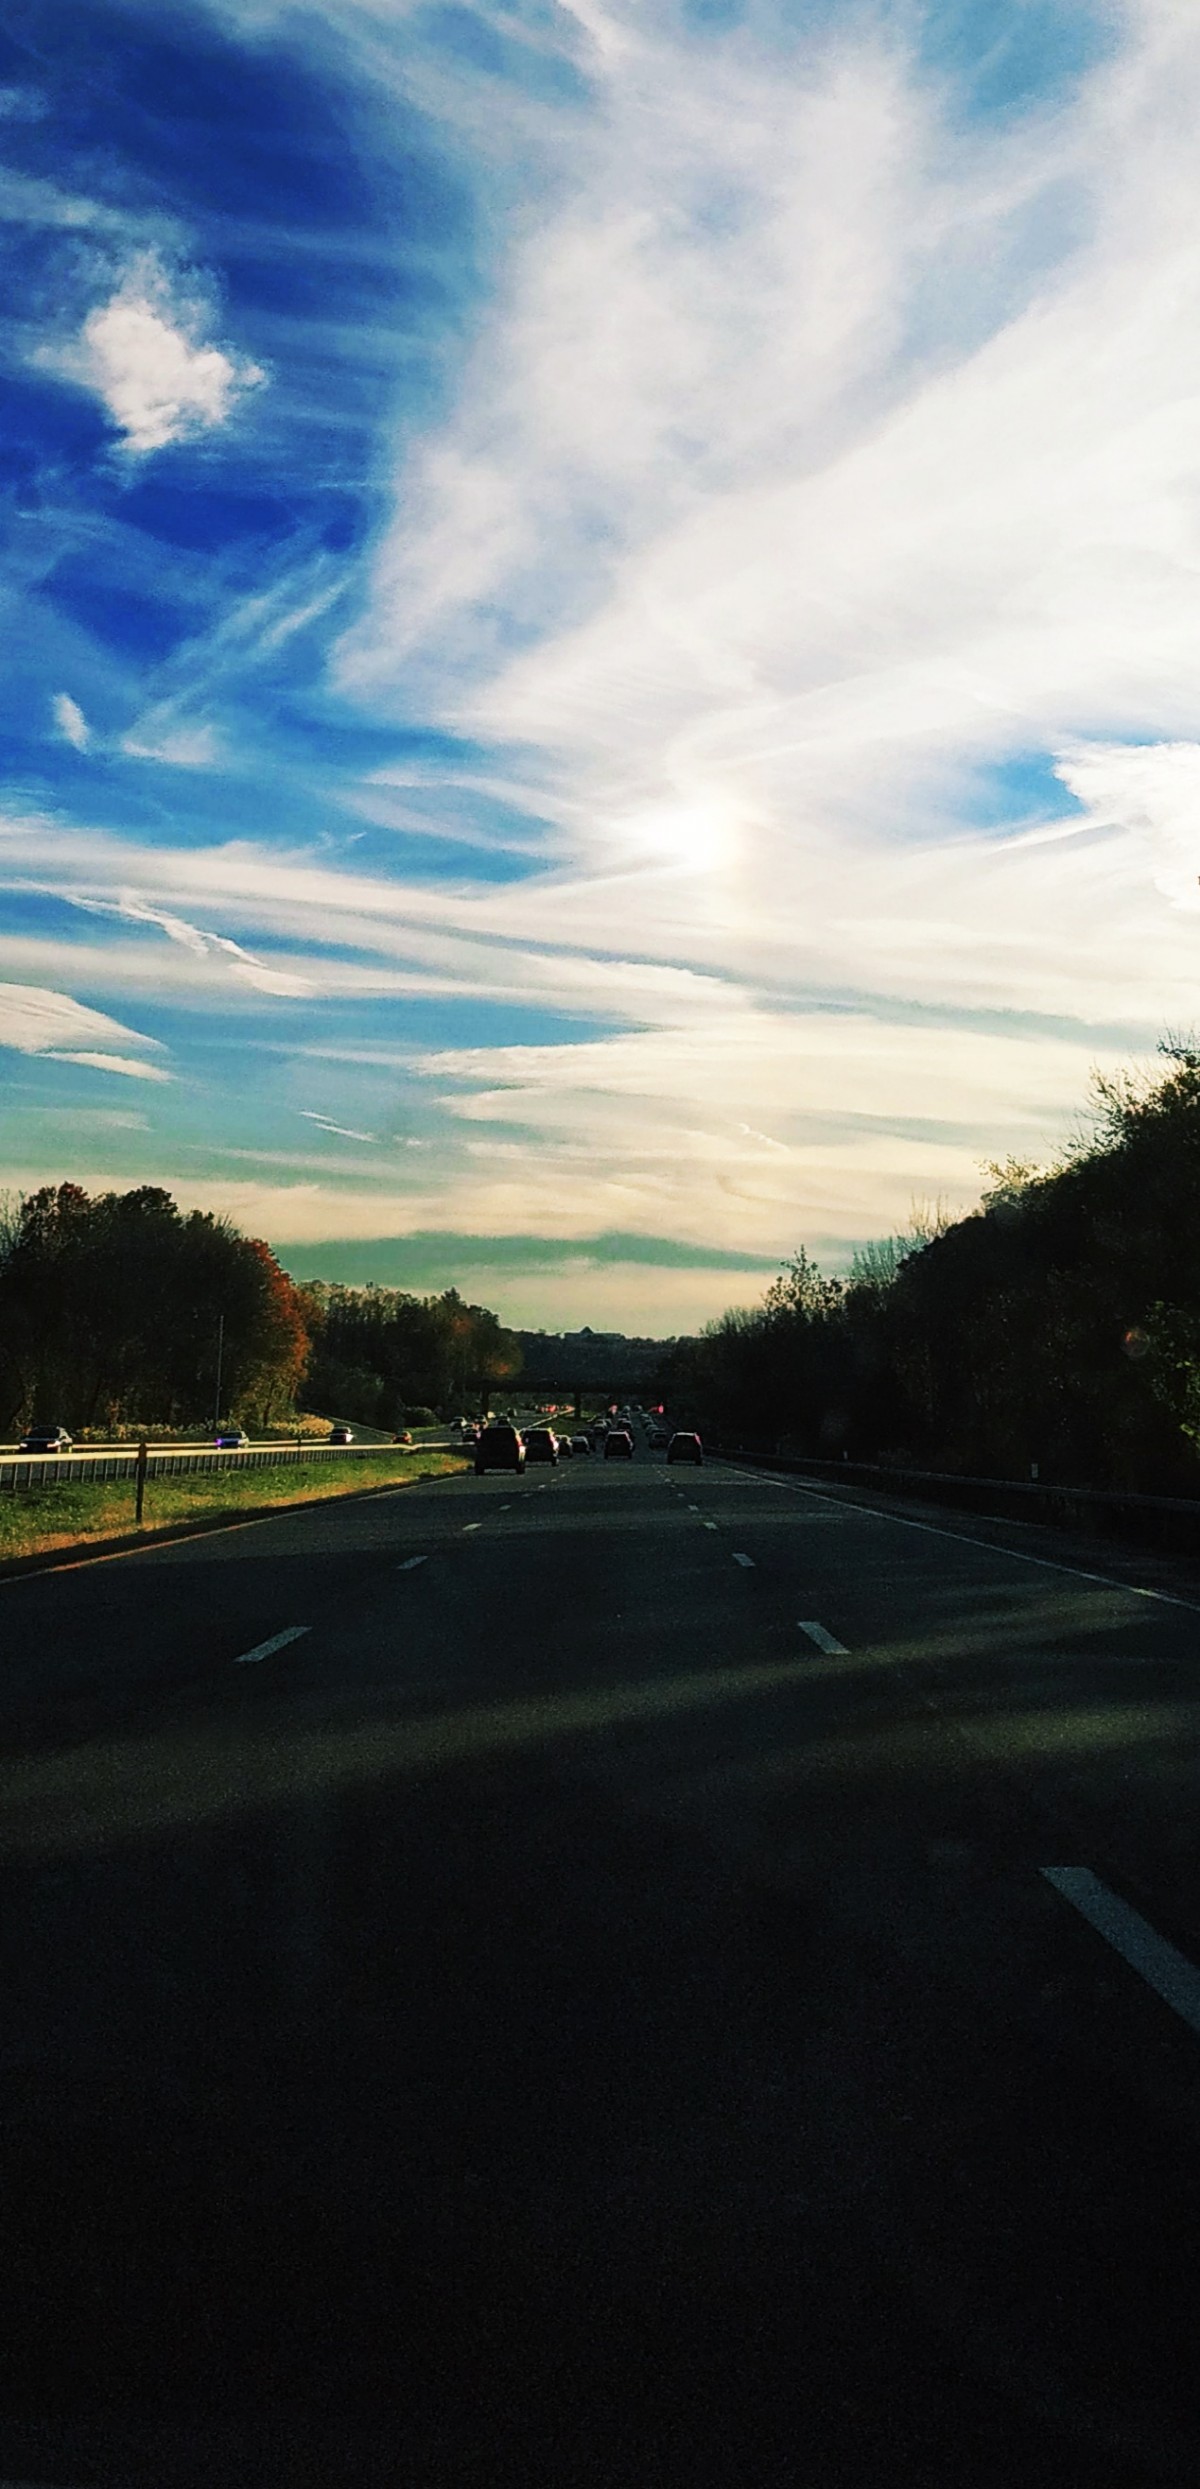 صورة عالية الدقة خالية من السماء ، الأزرق ، السفر ، الأخضر ، سيارة ، طريق ، سحابة ، طريق سريع ، الأسفلت ، ناتو